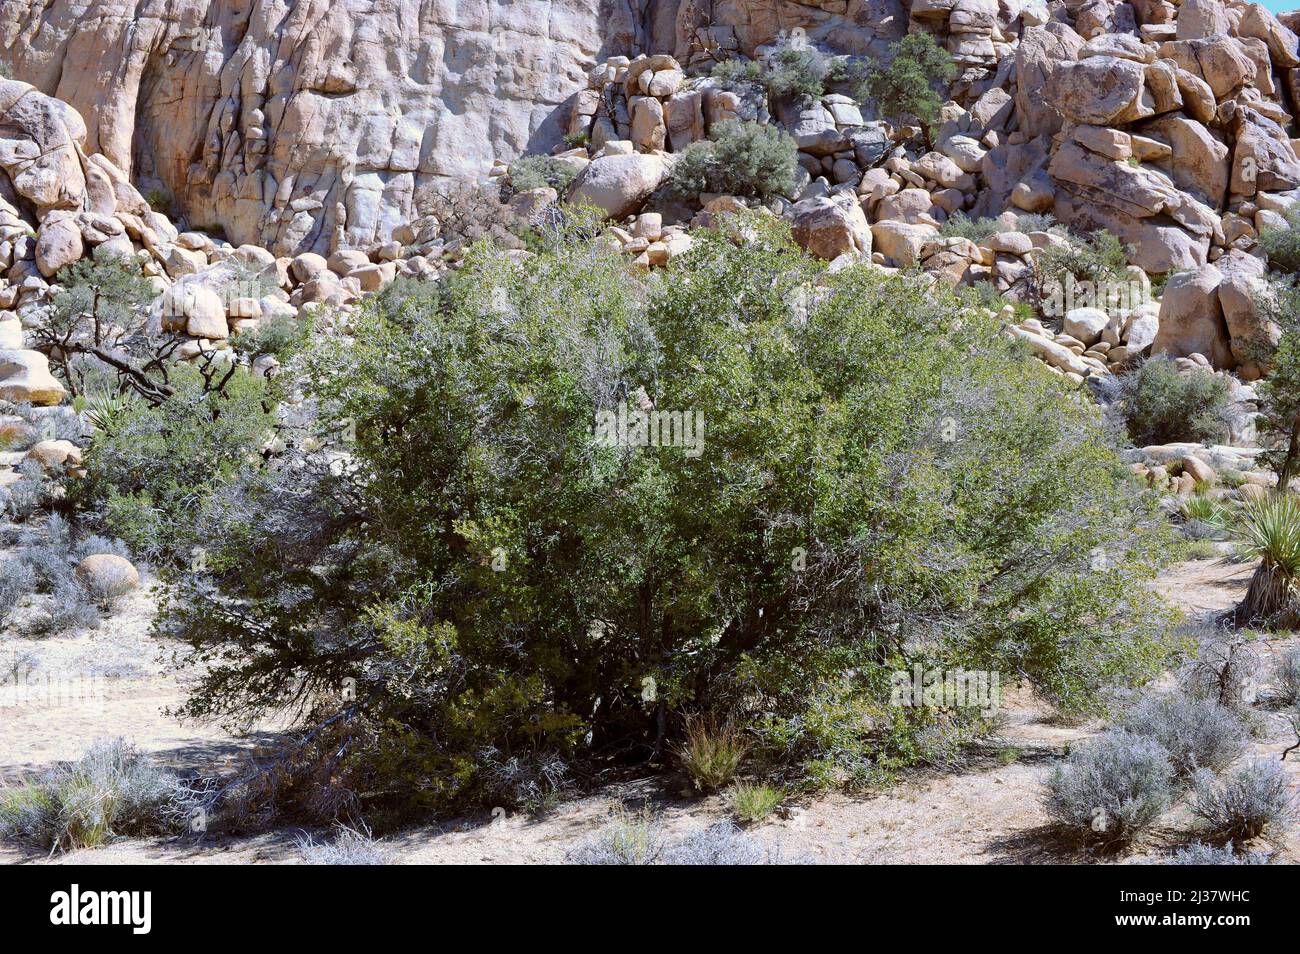 Arbusto de roble vivo o roble gris (Quercus turbinella) es un arbusto o árbol pequeño perenne nativo del suroeste de Estados Unidos y noroeste de México. Esta foto Foto de stock